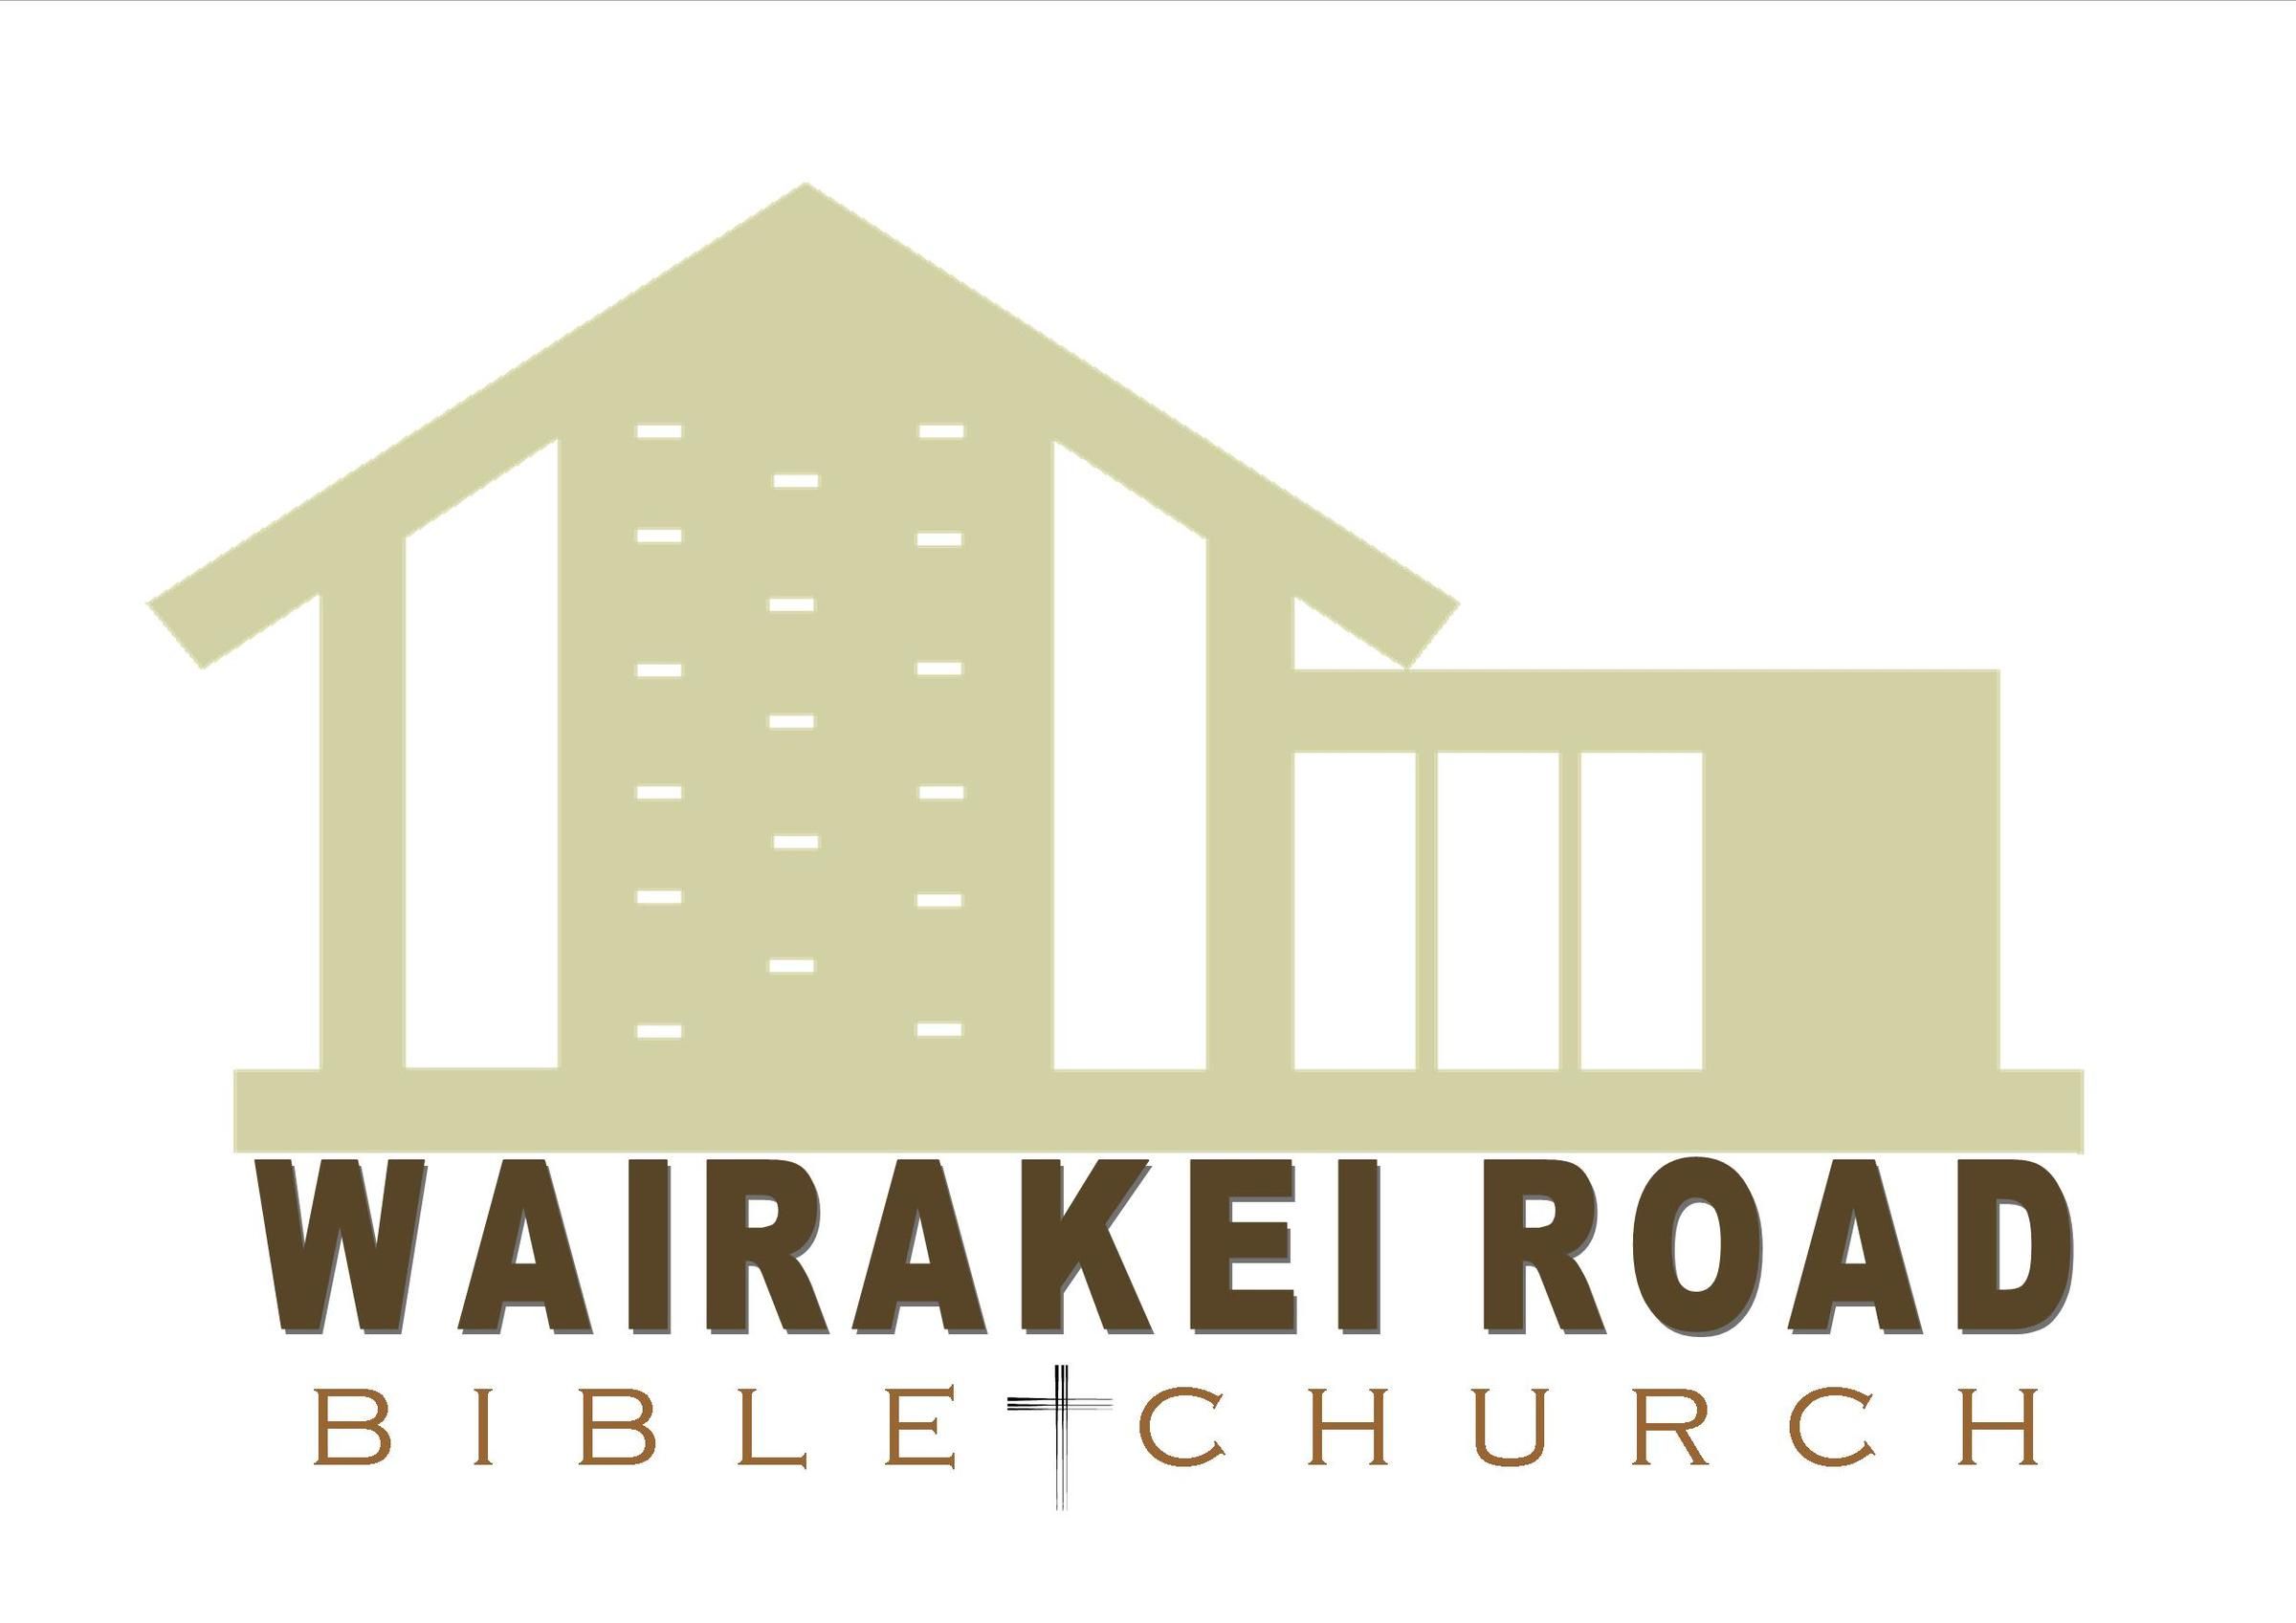 Wairakei Road Bible Church